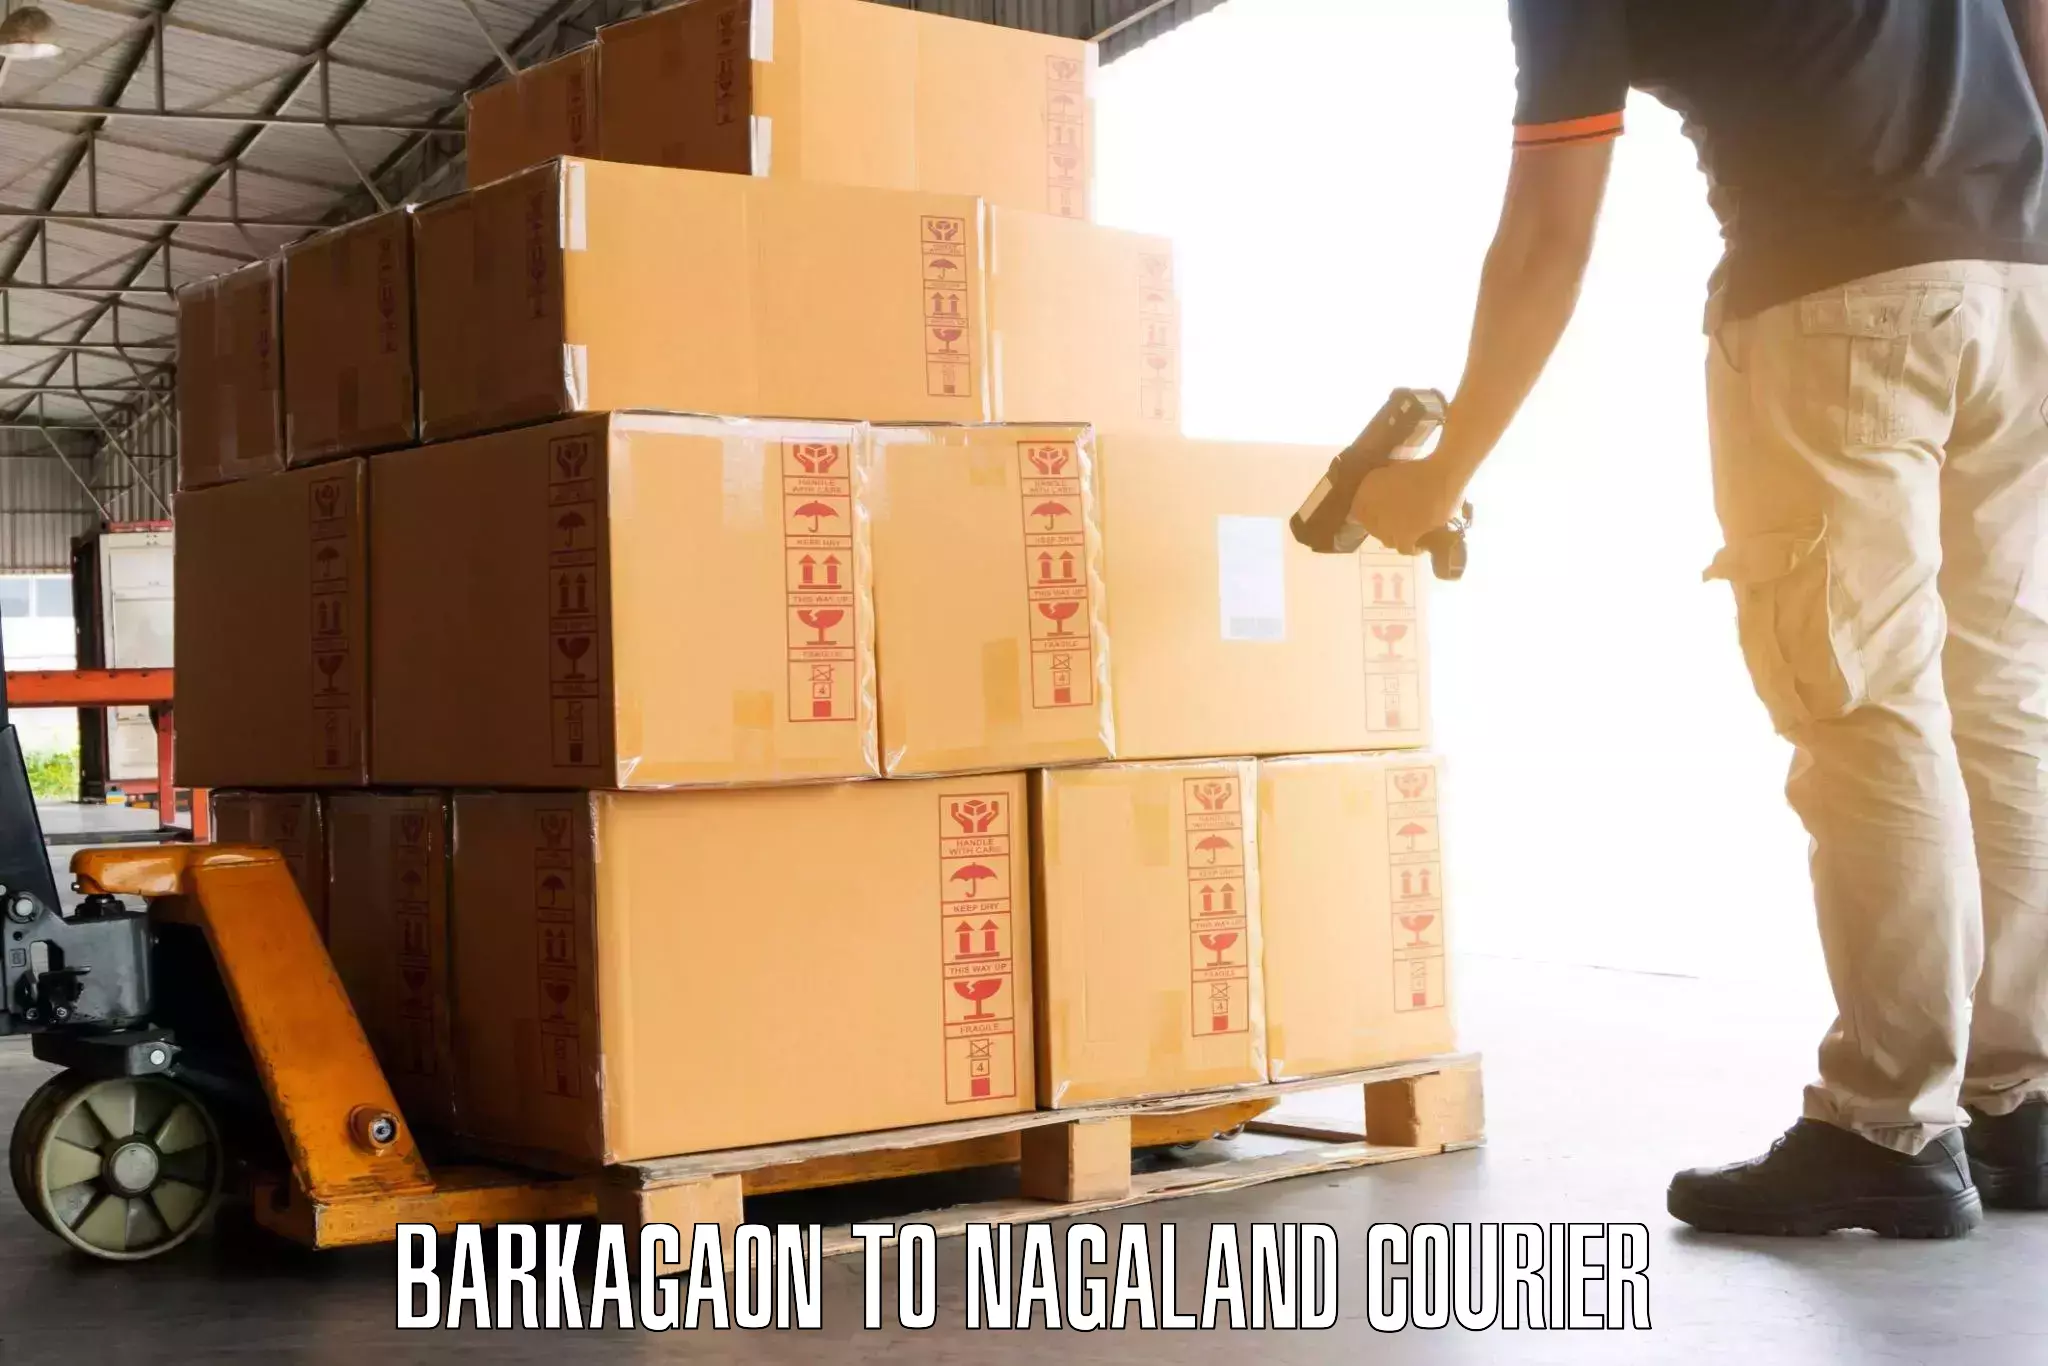 Baggage handling services Barkagaon to Nagaland